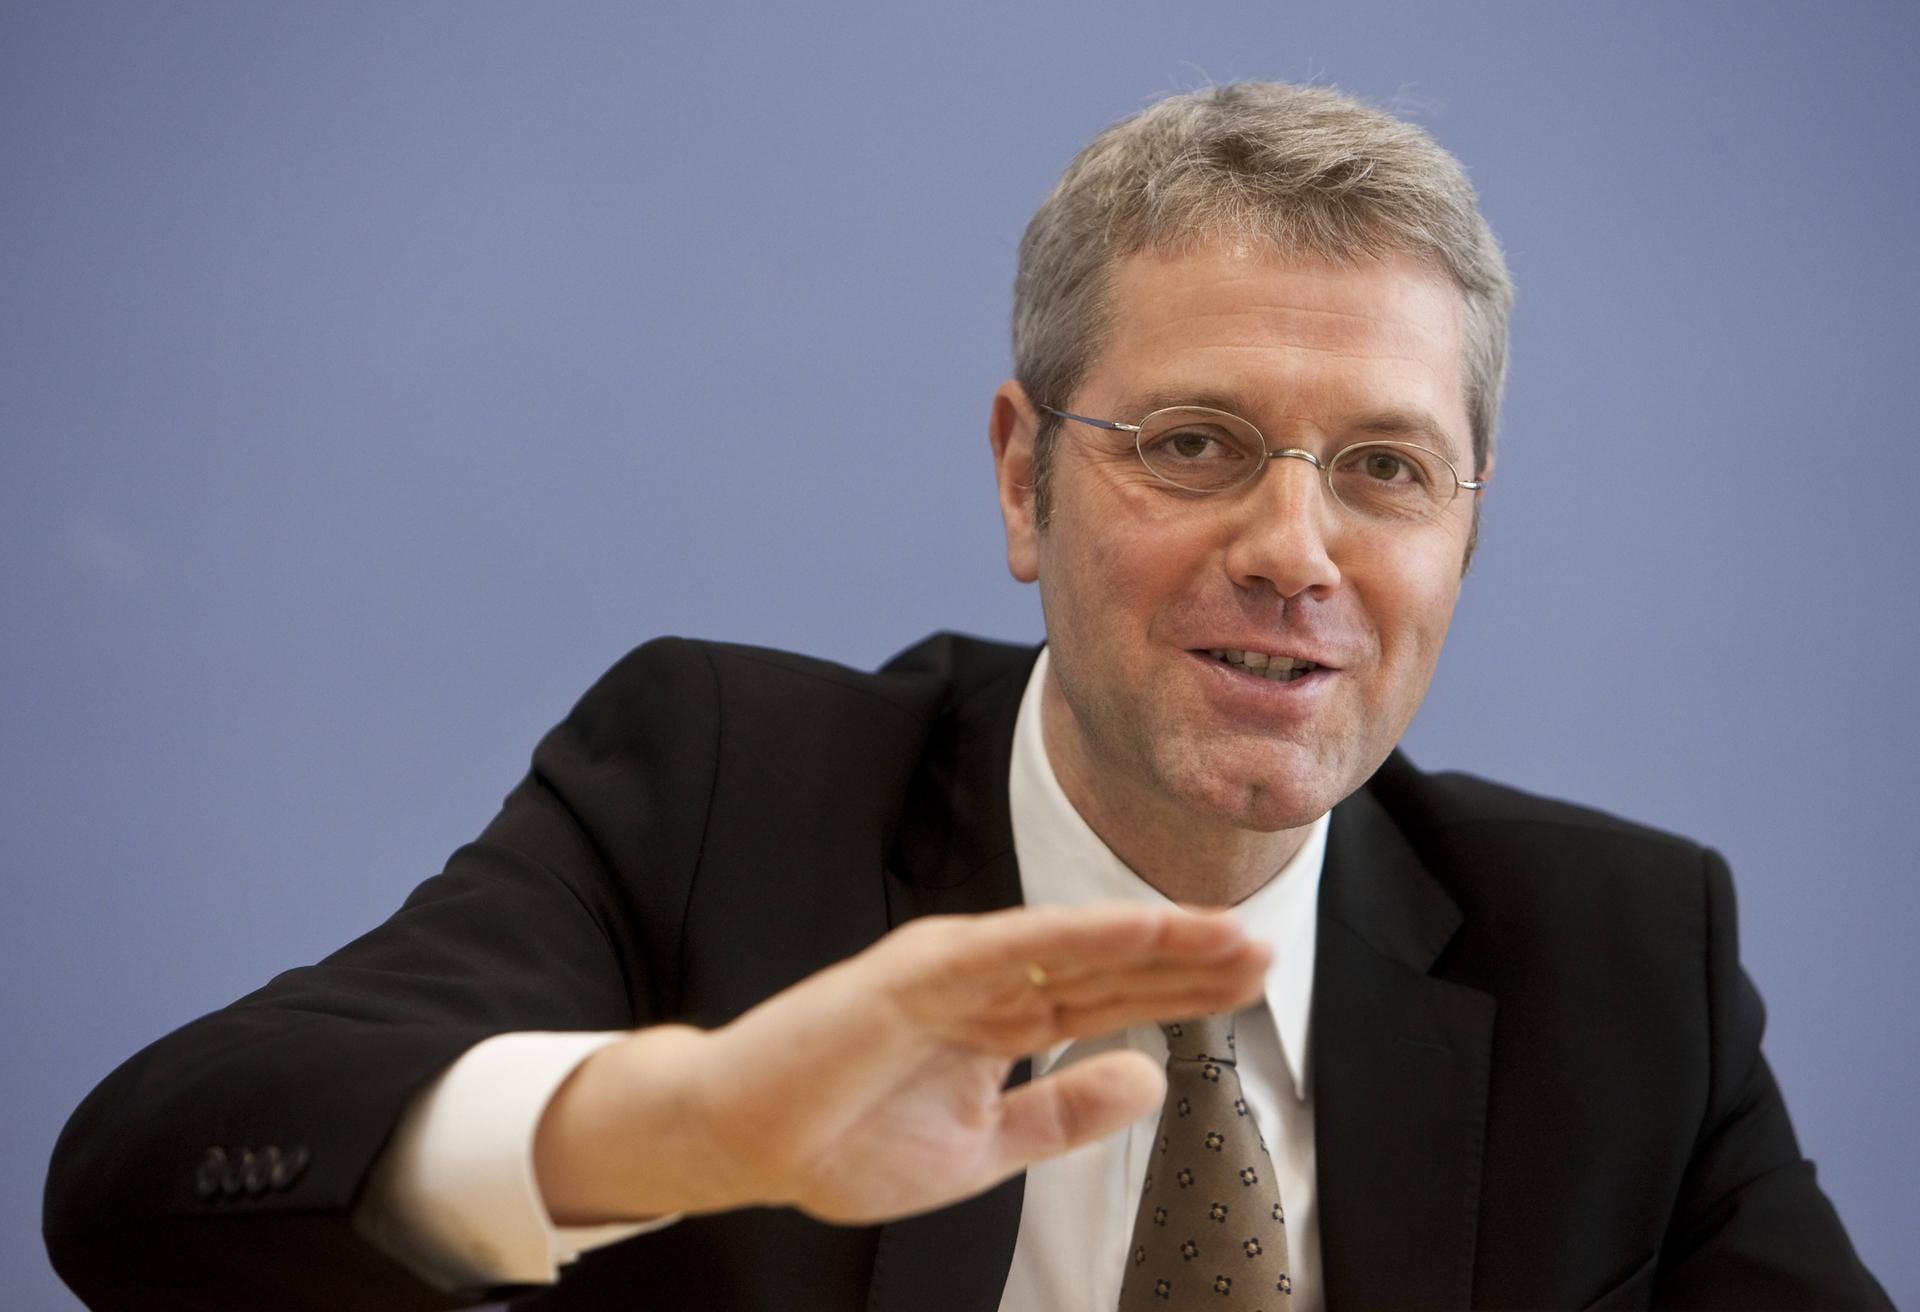 2010 bis Juni 2012 war Röttgen Vorsitzender des CDU-Landesverbandes Nordrhein-Westfalen, von November 2010 bis Dezember 2012 war er zudem stellvertretender Bundesvorsitzender der CDU Deutschlands.